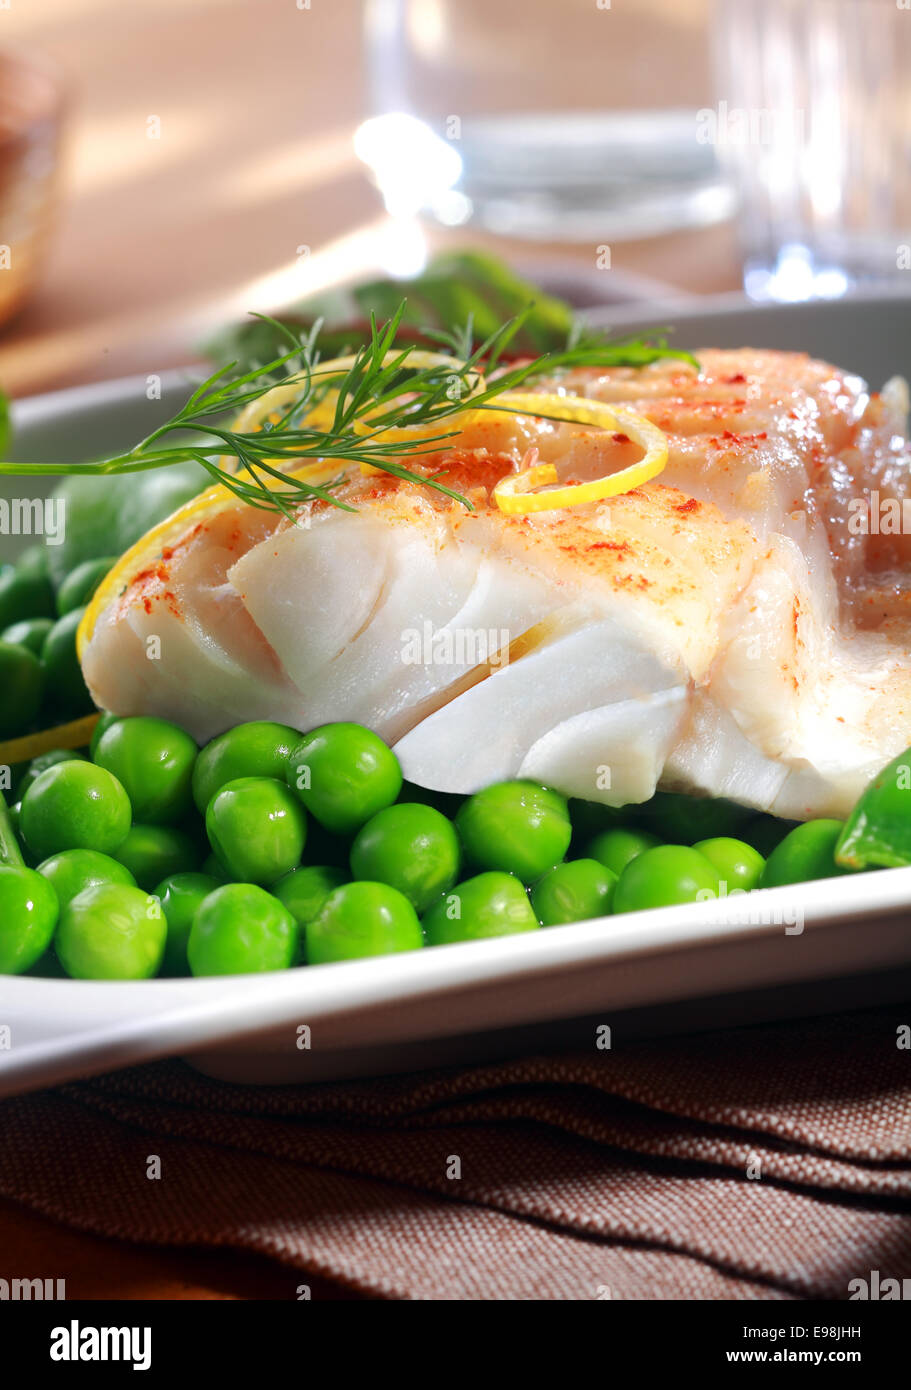 Köstliche Meeresfrüchte Mahlzeit vom Grill oder Ofen gebackene Fischfilet mit saftig grünen petit Pois Erbsen, Zitronenschale und Dill in einem Restaurant serviert Stockfoto